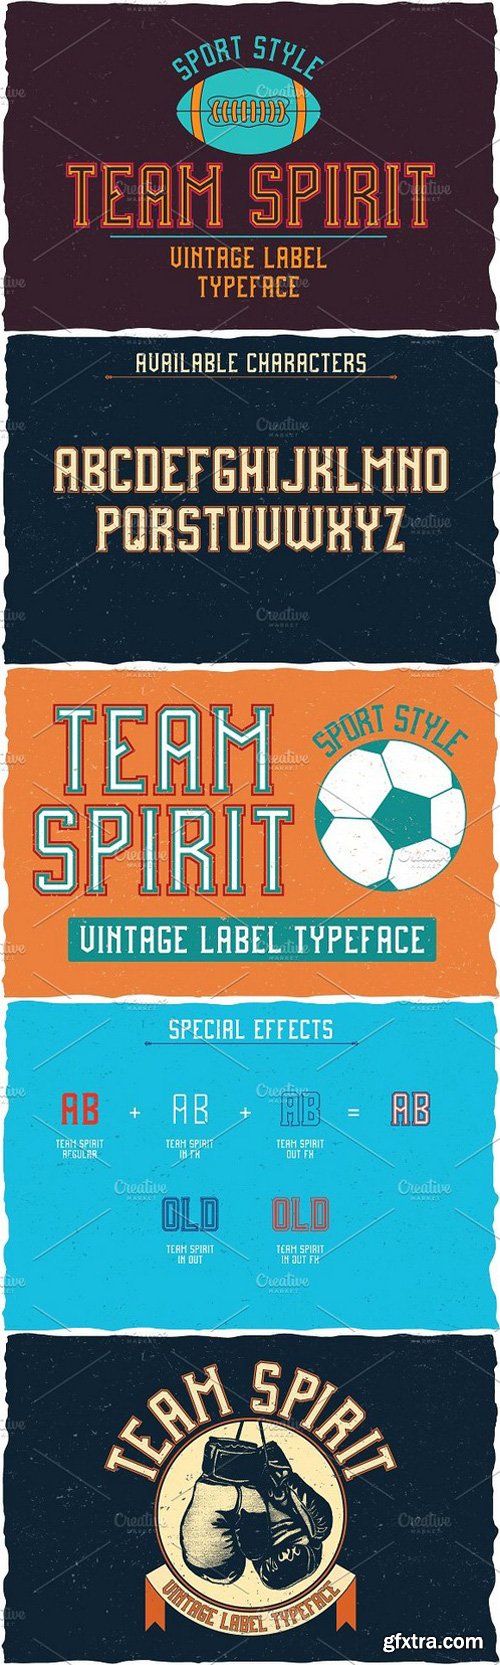 CM - Team Spirit Label Typeface 1471030